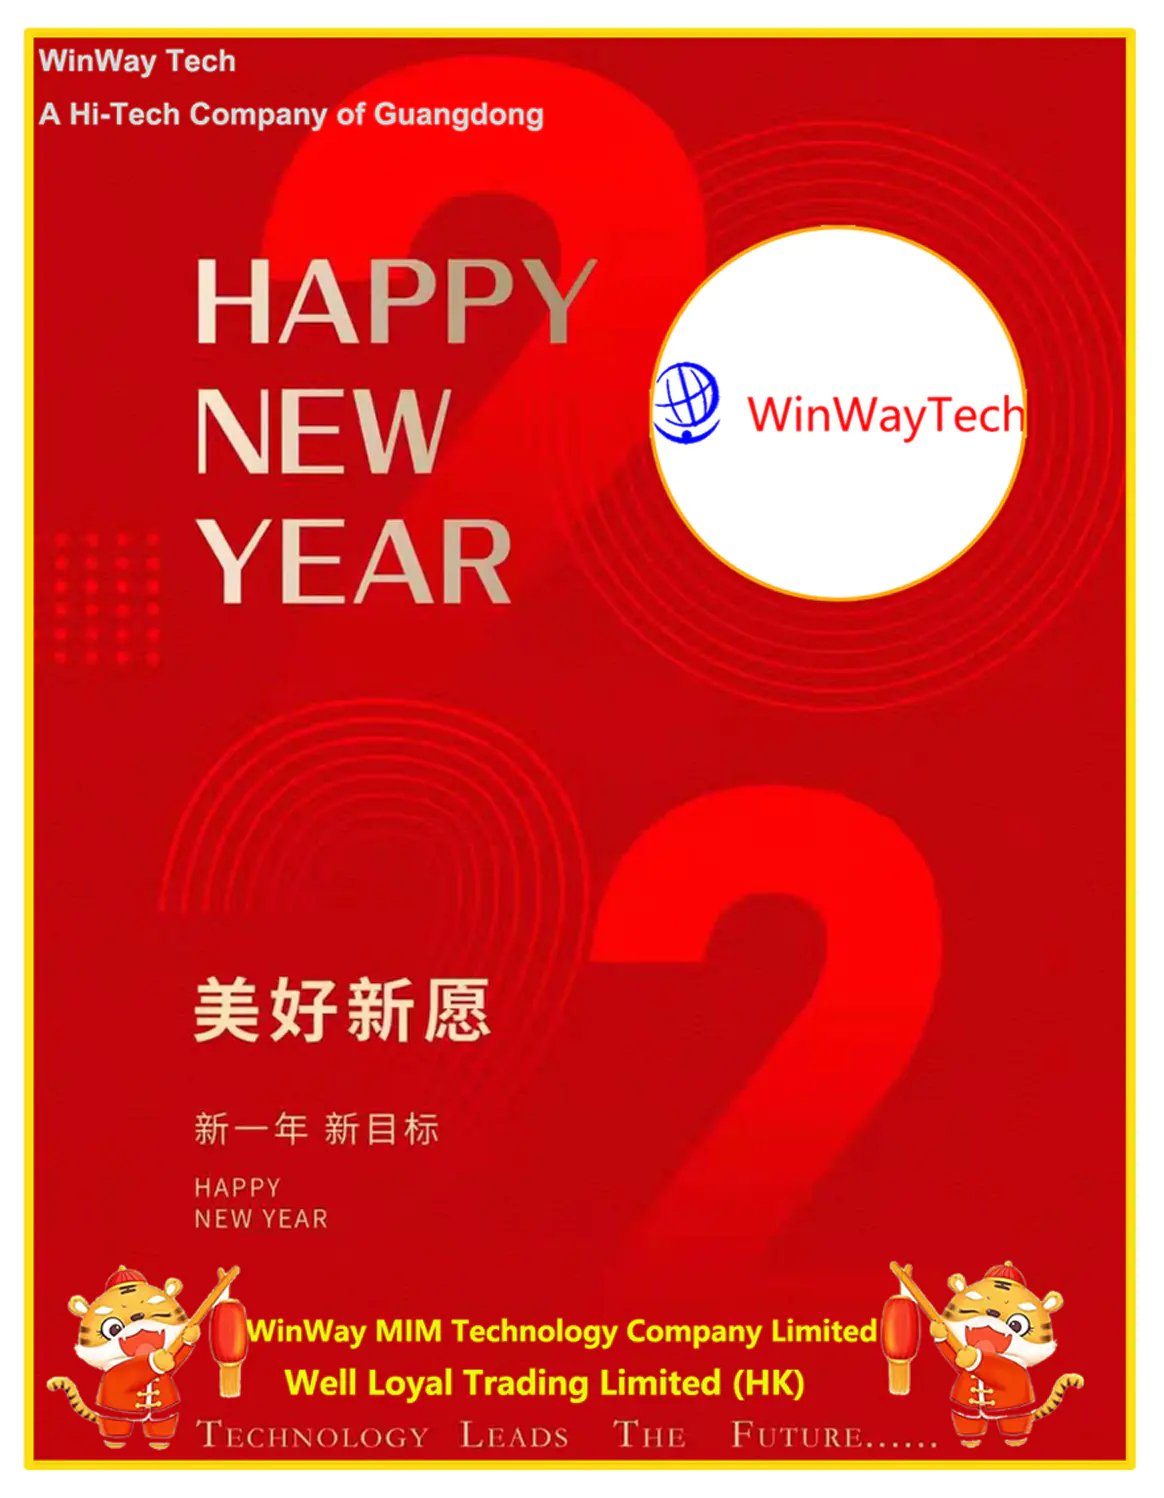 WinWay Tech reconocida como una empresa de alta tecnología